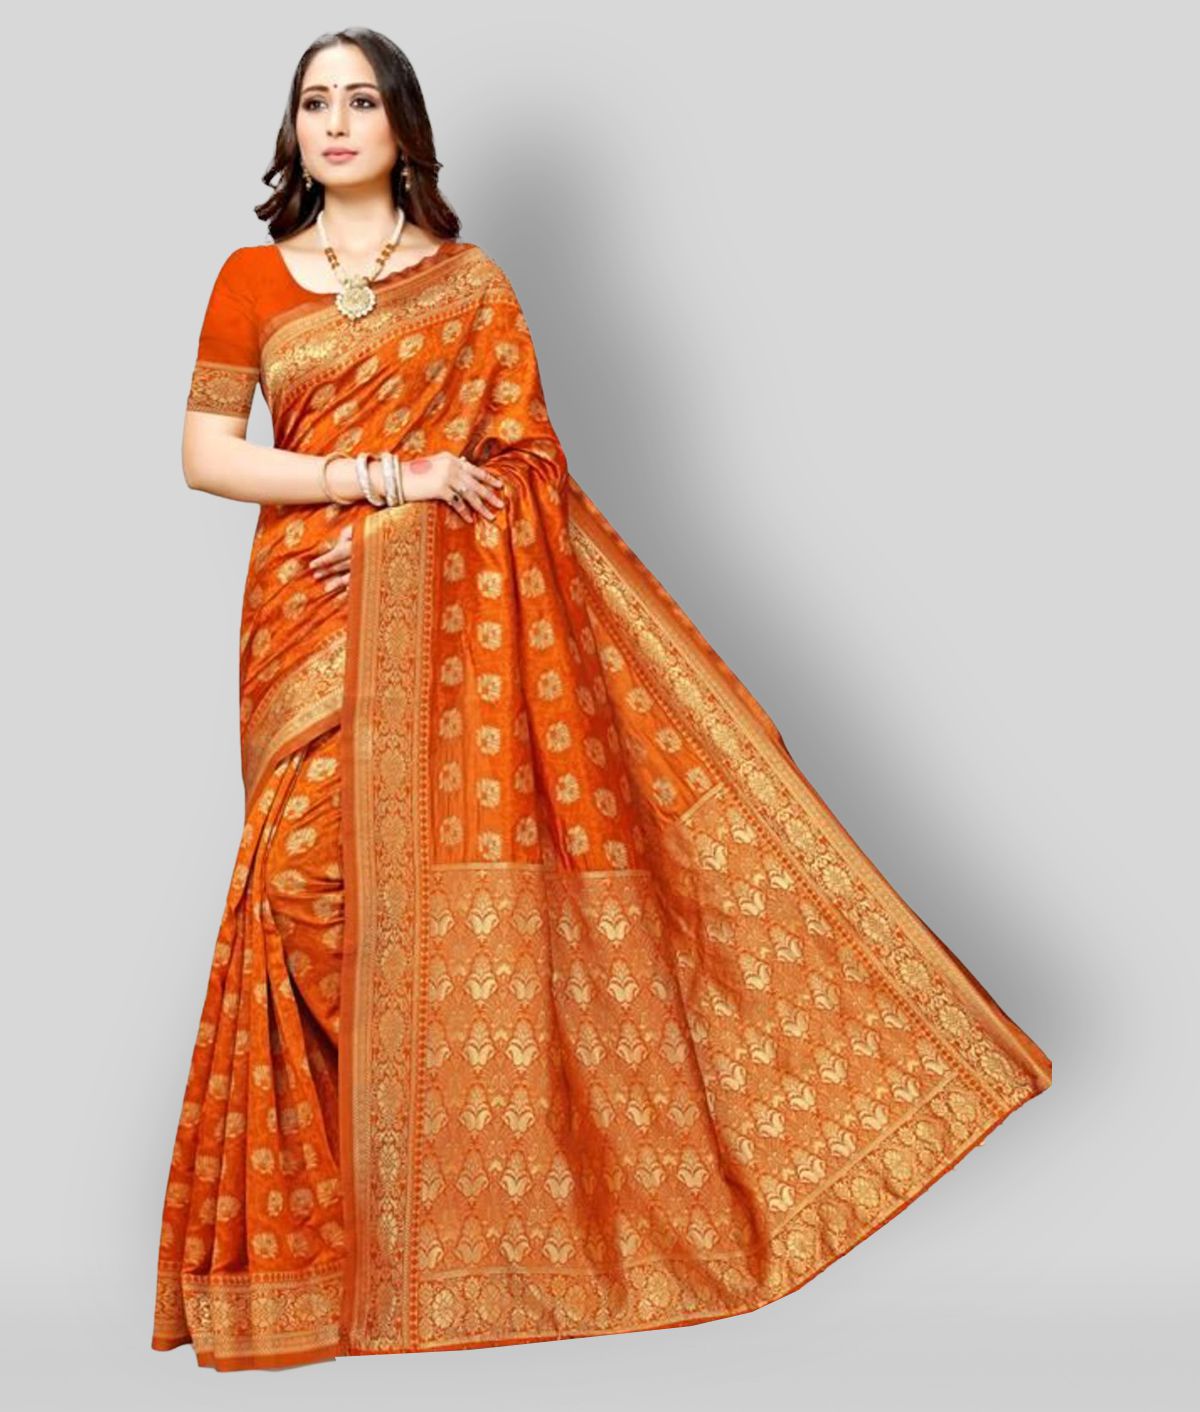     			NENCY FASHION - Orange Banarasi Silk Saree With Blouse Piece (Pack of 1)